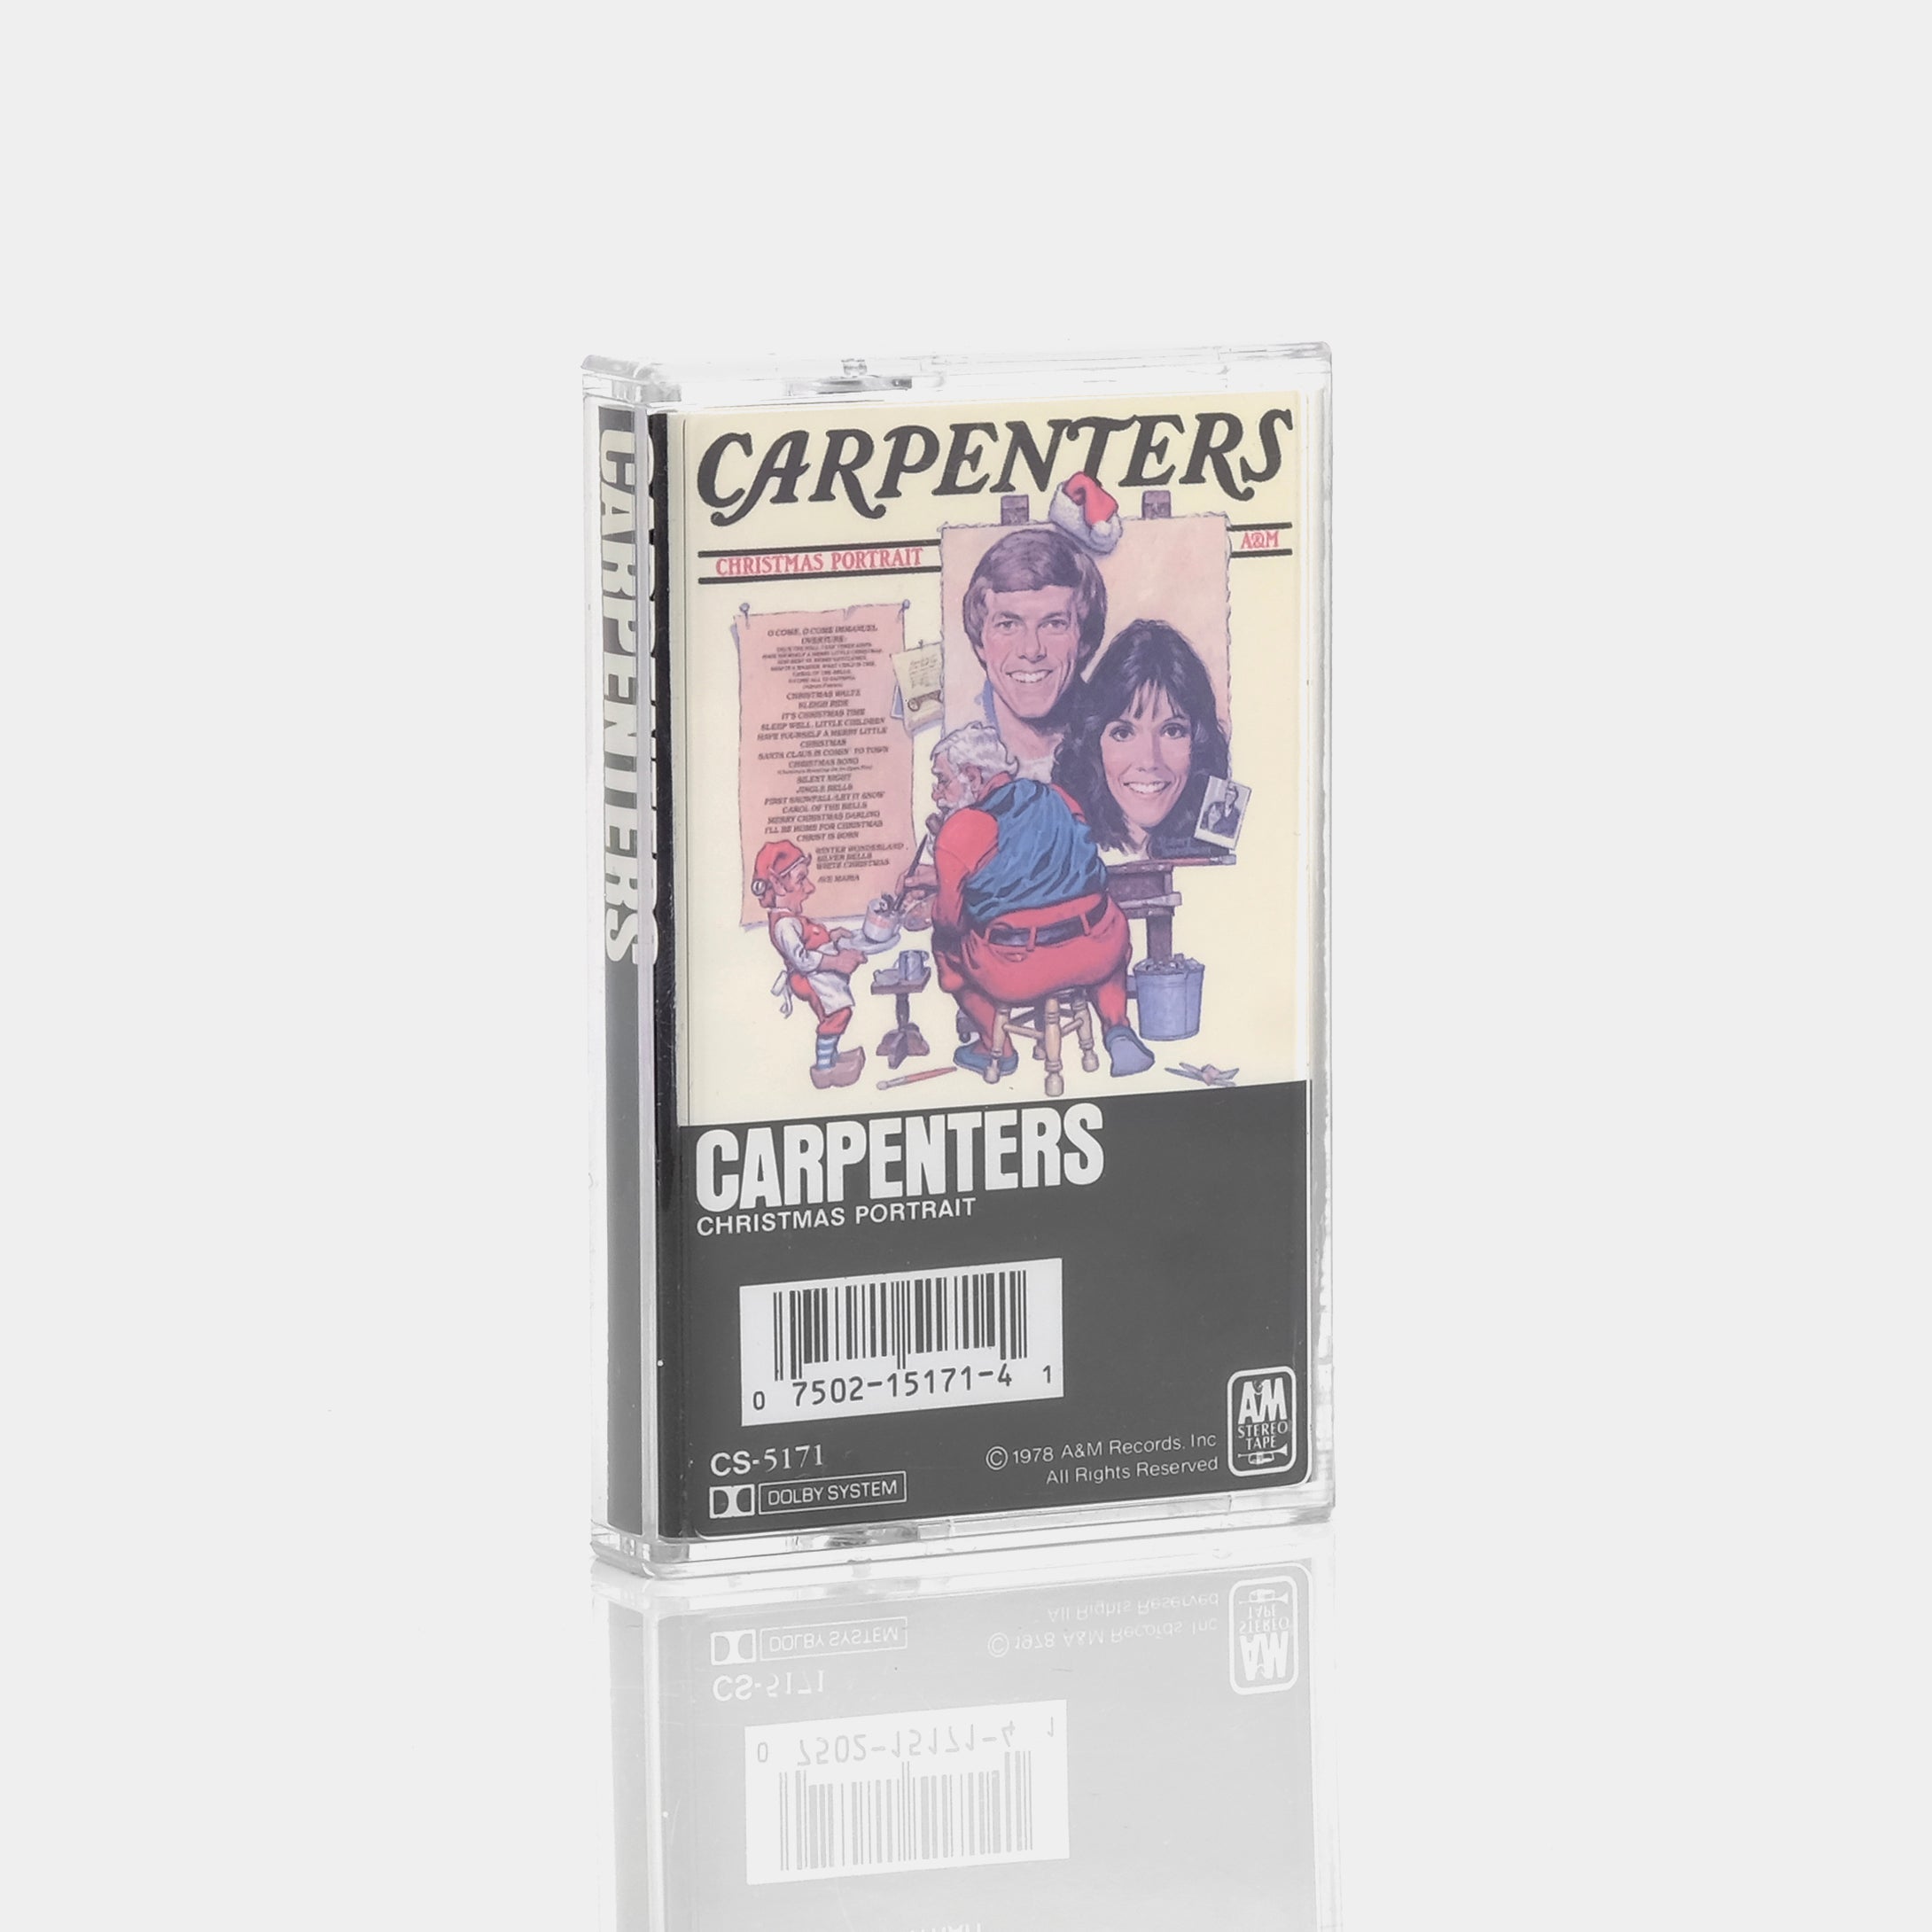 The Carpenters - Christmas Portrait Cassette Tape